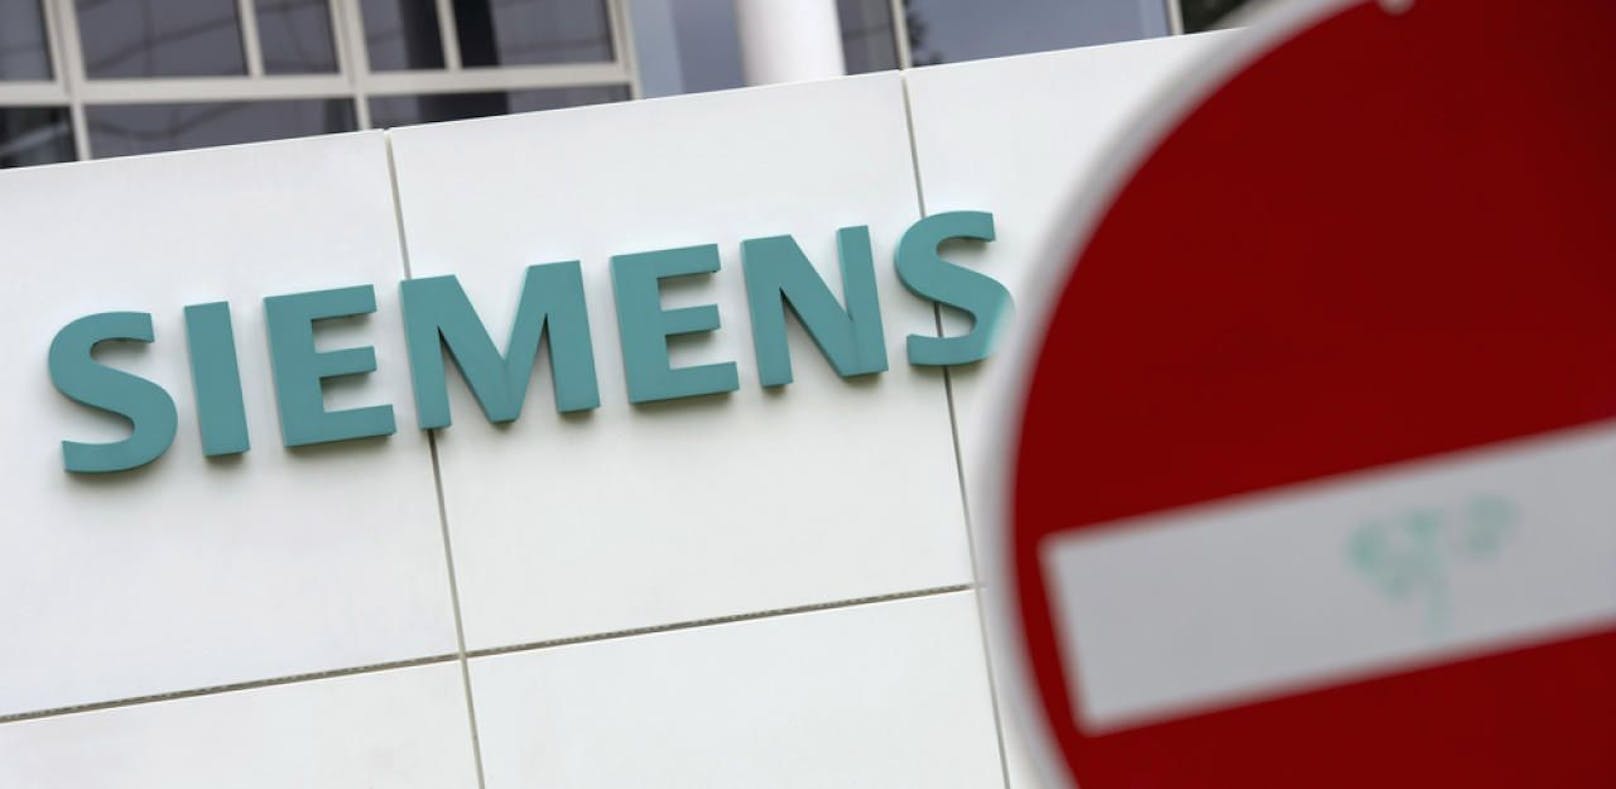 Siemens streicht Tausende Jobs, auch Wien betroffen